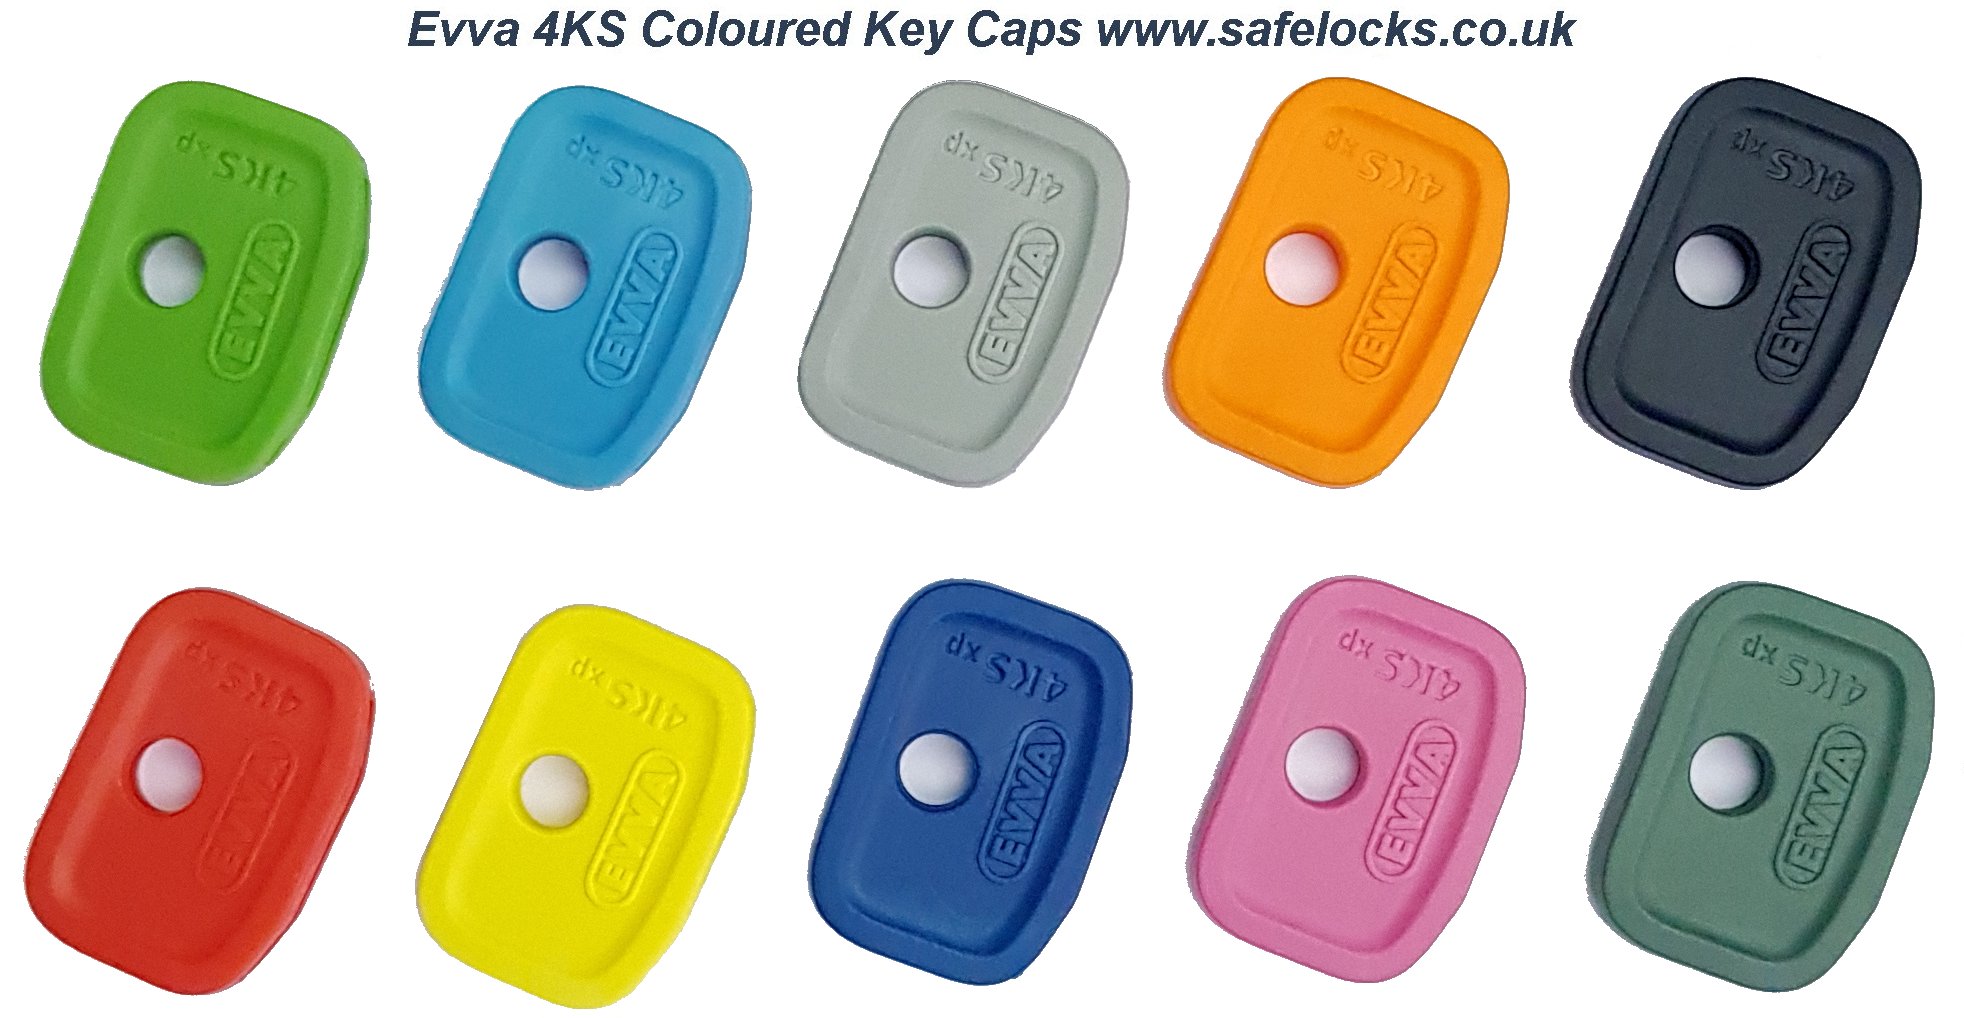 EVVA 4KS Coloured Key Caps